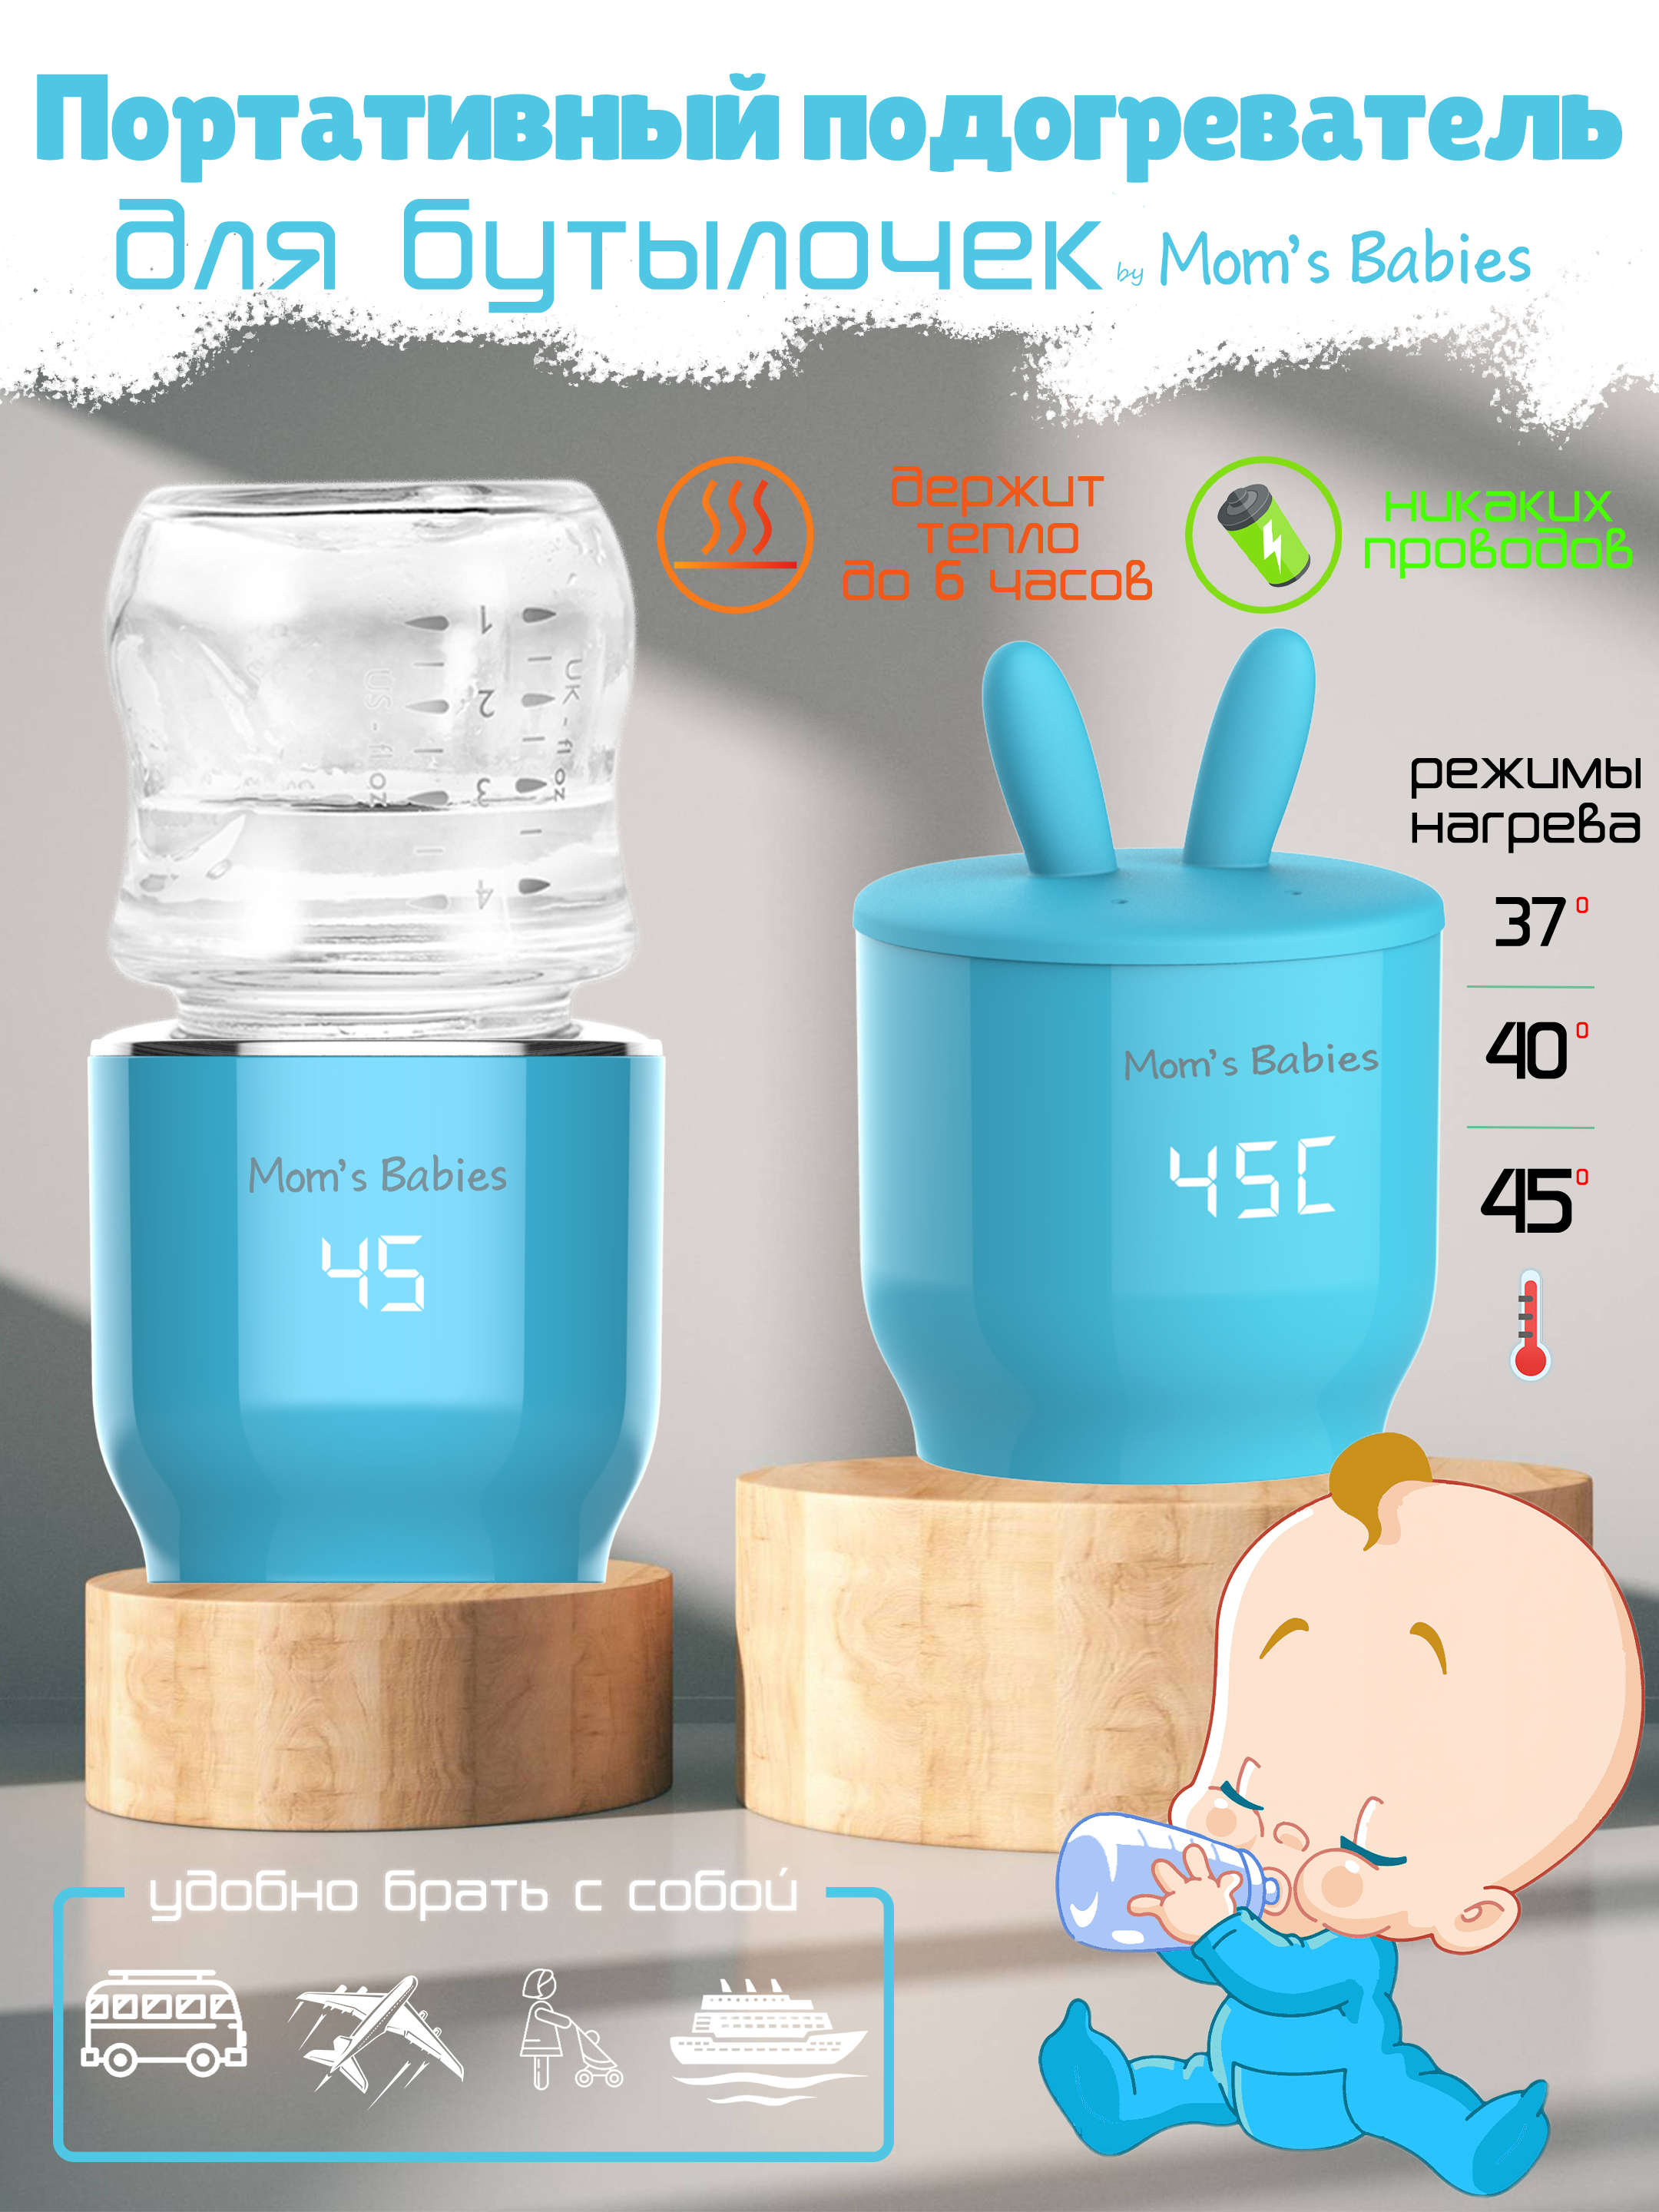 Портативный подогреватель Mom's Babies FS01 для бутылочек и детского питания голубой проводные наушники и портативный аккумулятор 5000 mah